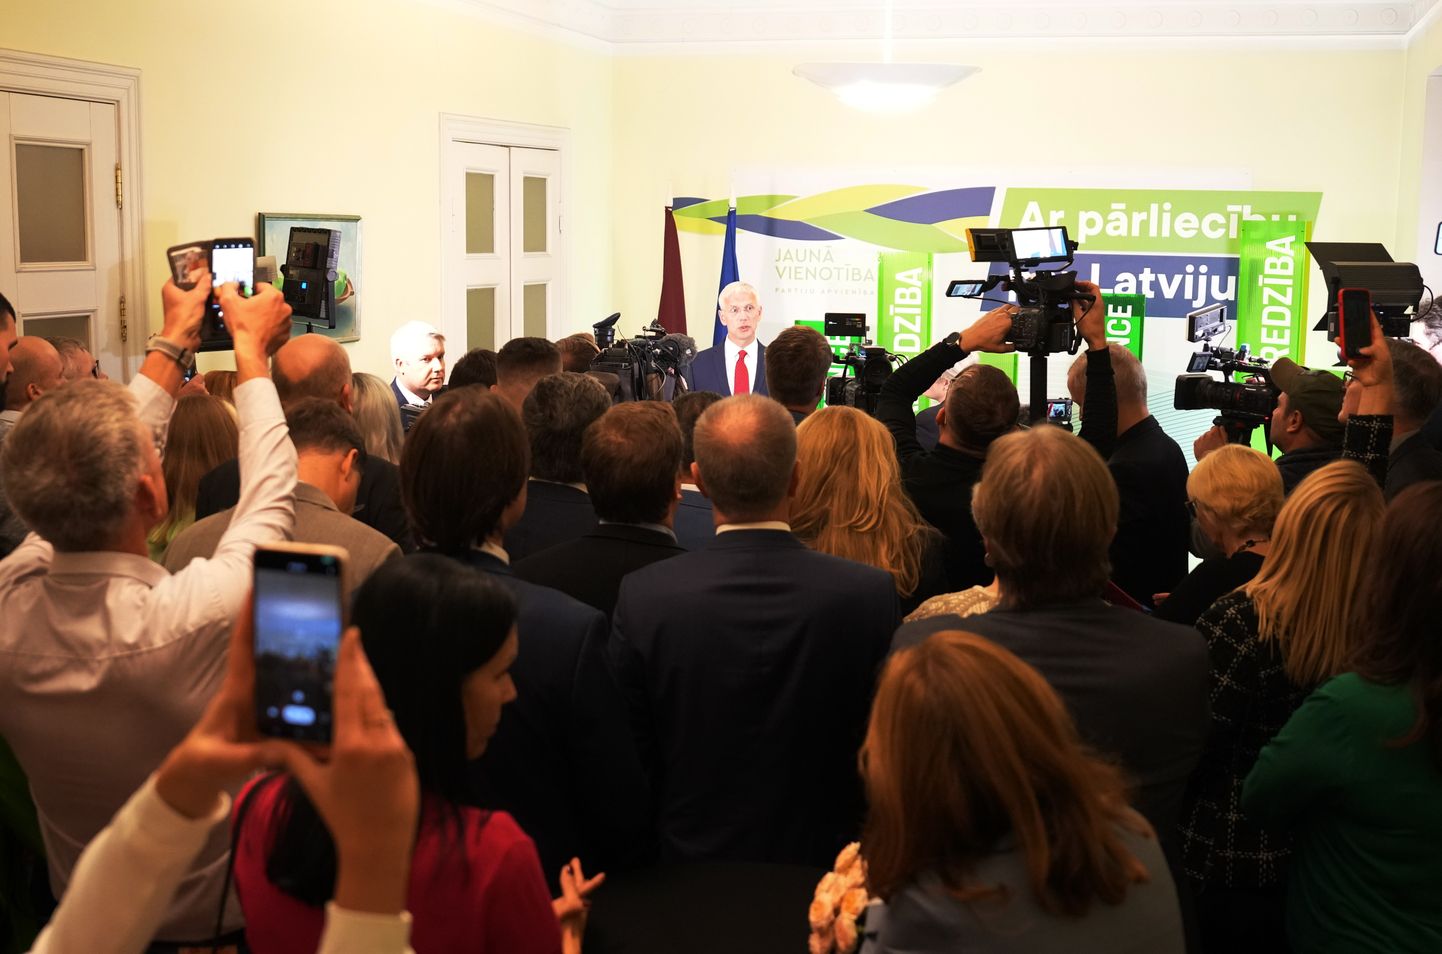 Кришьянис Кариньш в ожидании результатов выборов в 14-й Сейм